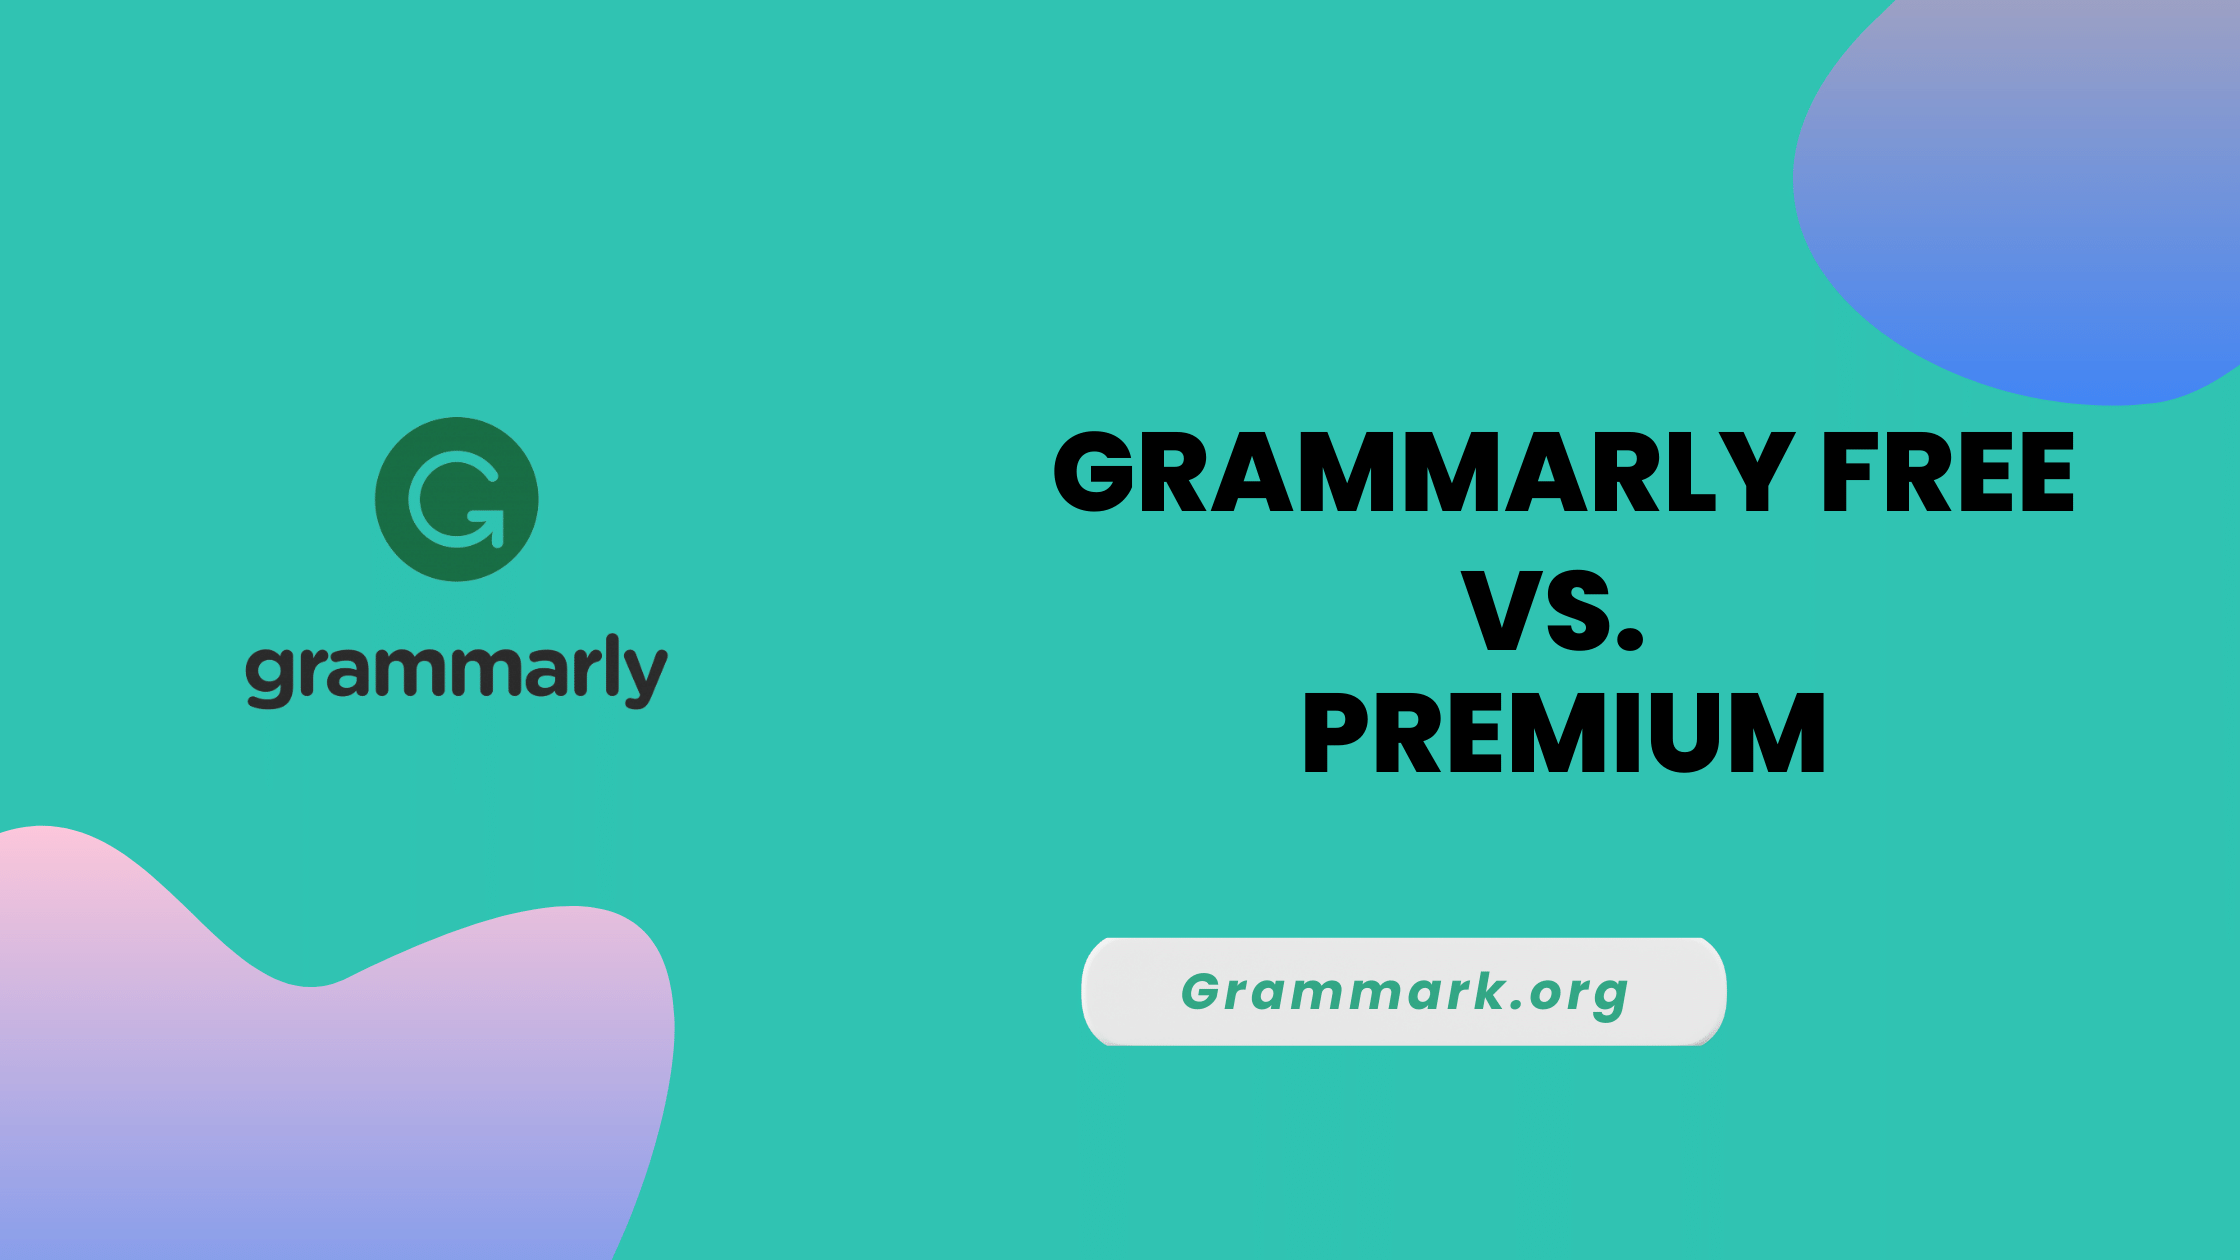 premiuim grammarly free